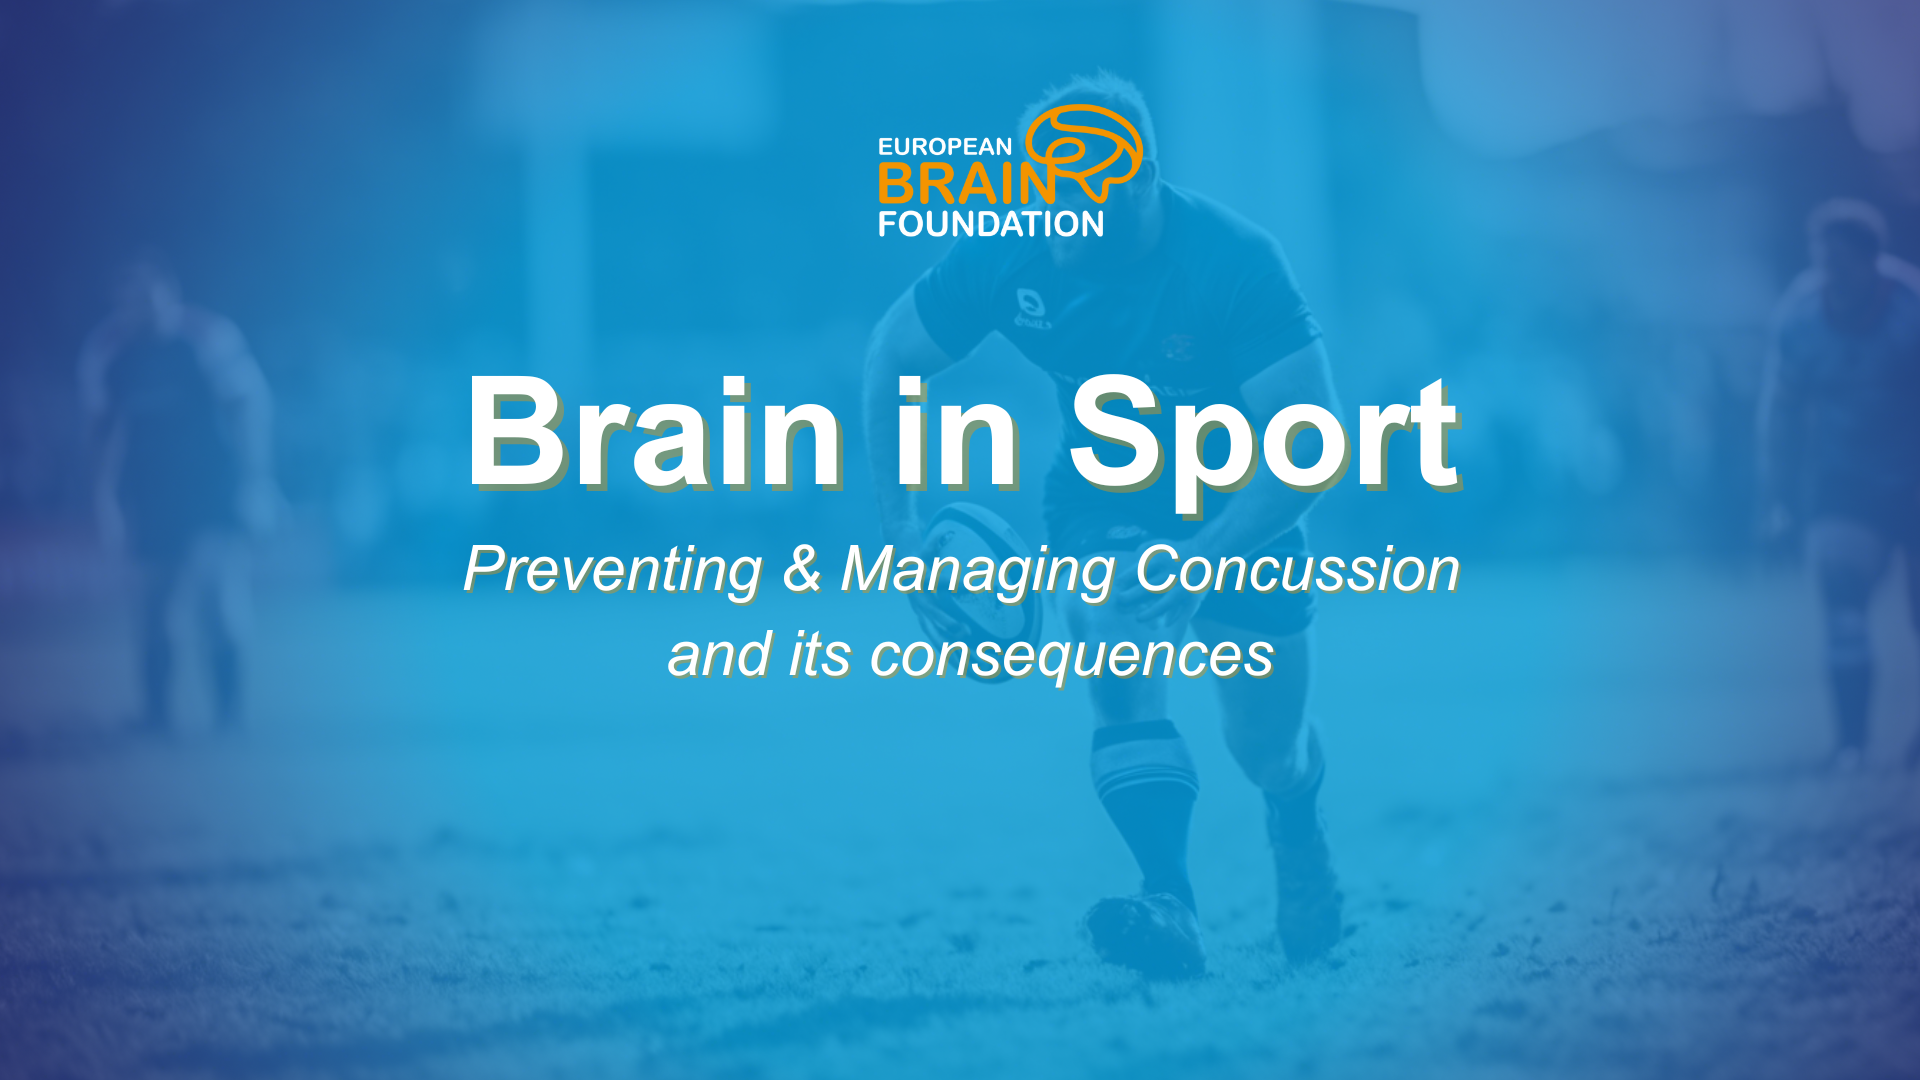 Brain in Sports European Brain Foundation Event Website Santé Sport Commotion Événement Bruxelles